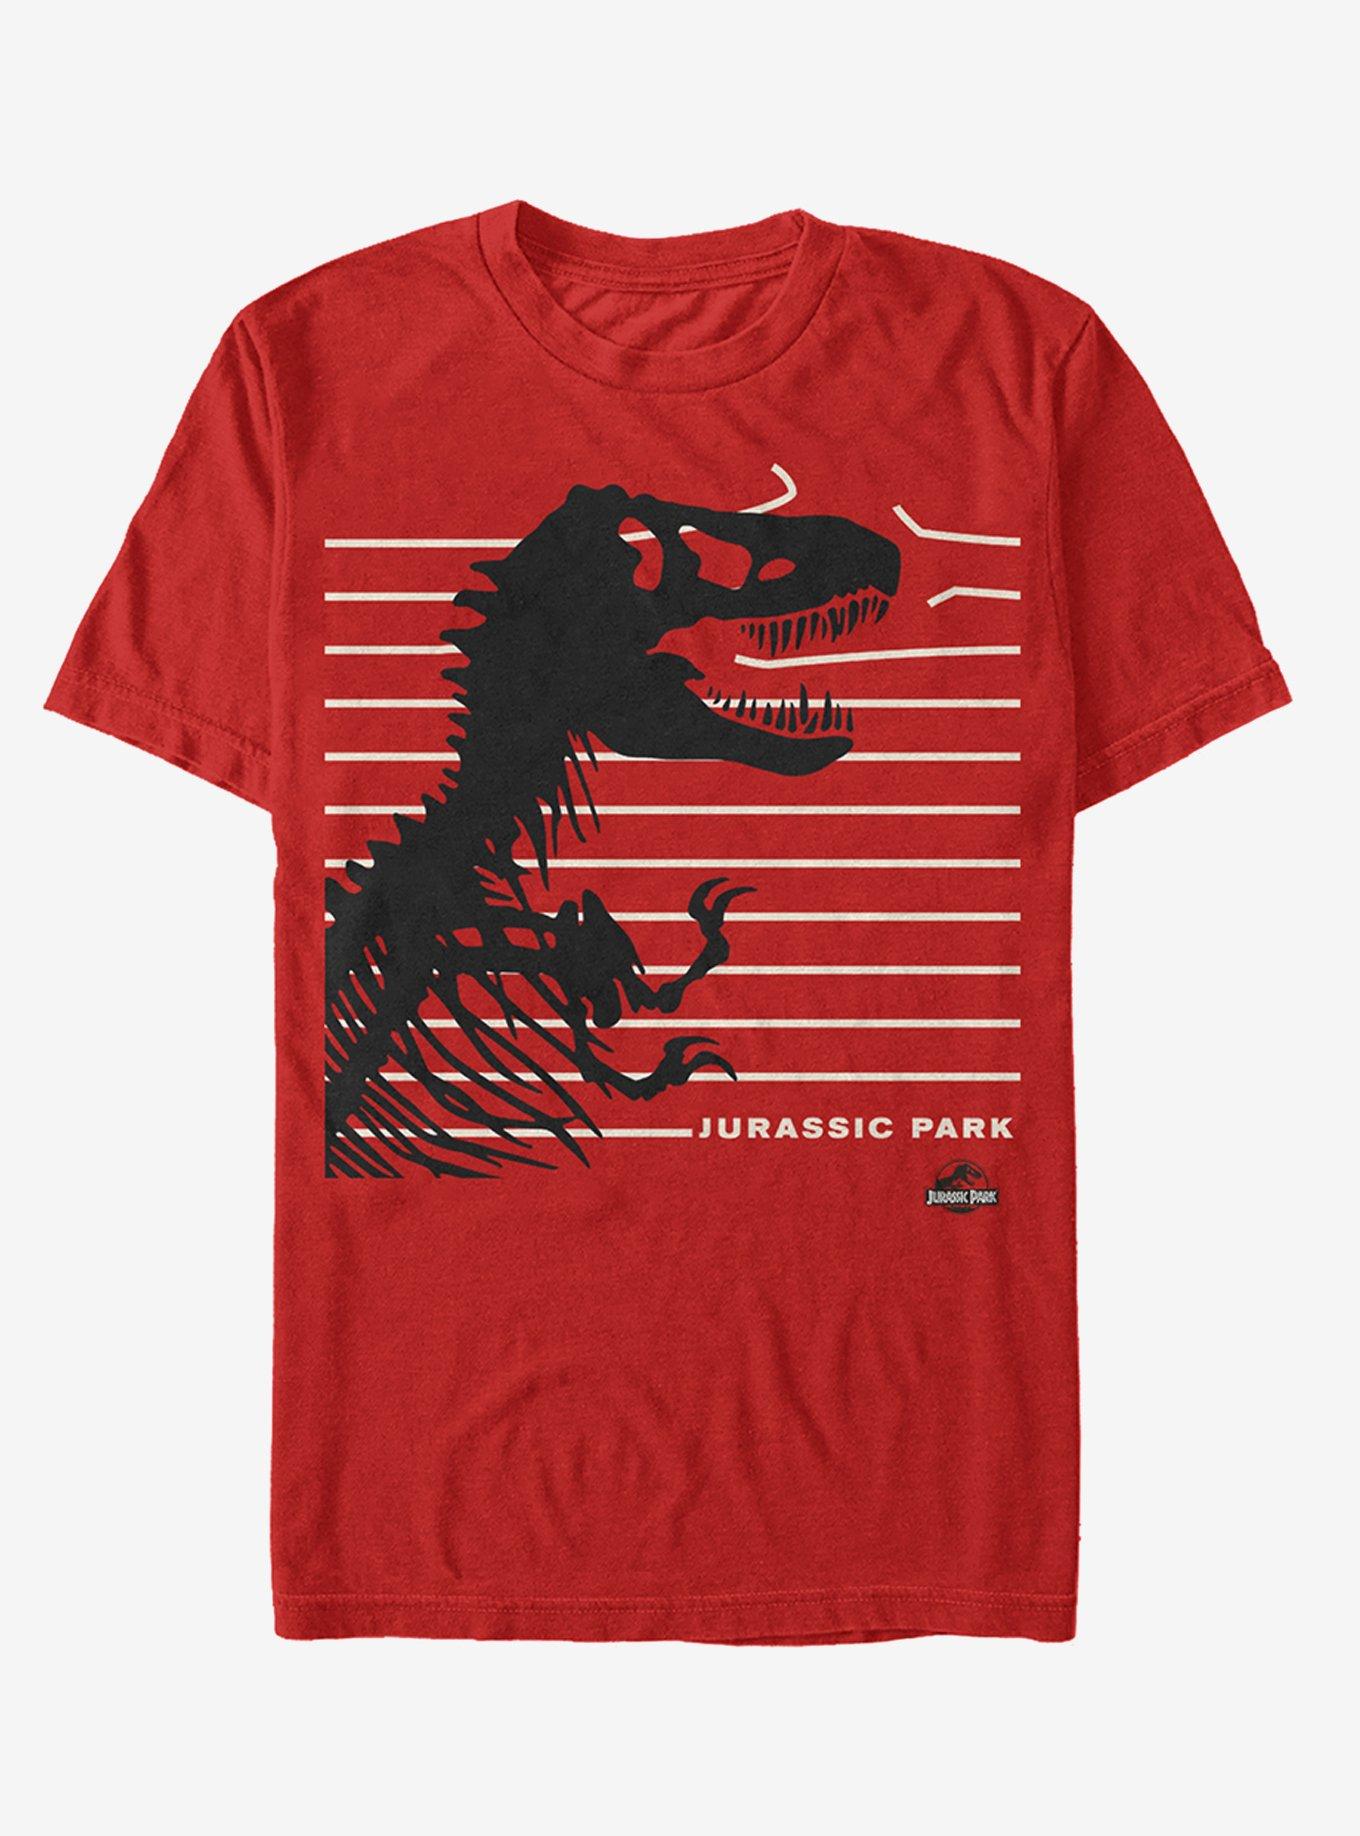 Jurassic Park T. Rex Fence T-Shirt